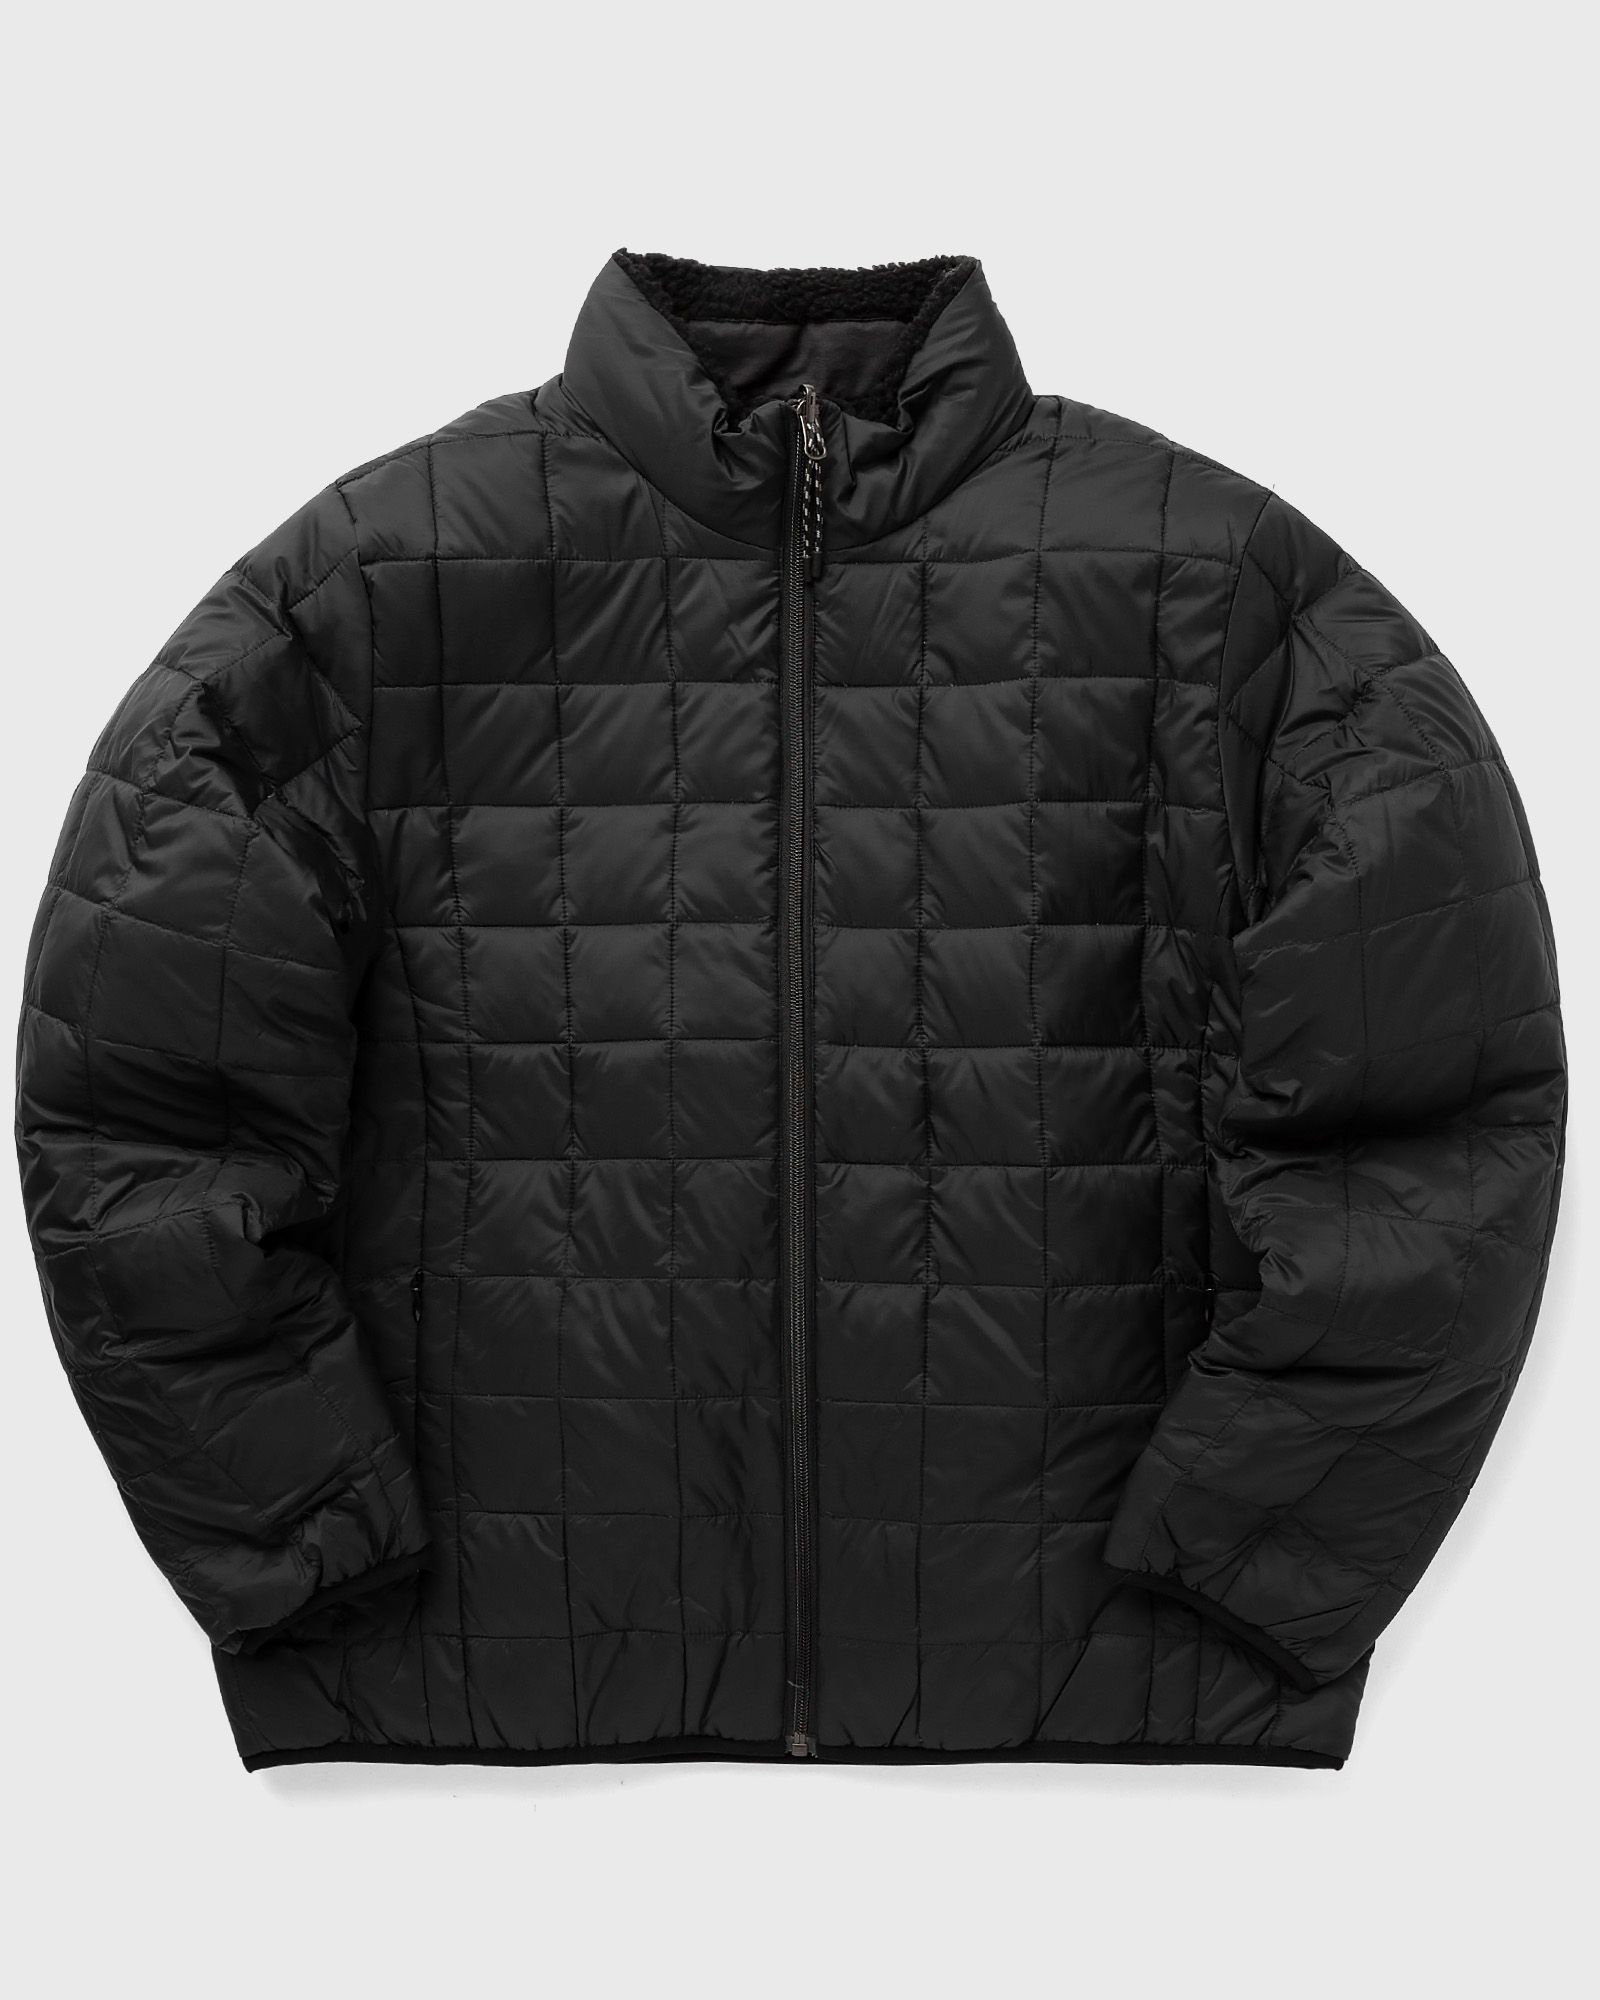 Taion - down x boa reversible jacket men windbreaker black in größe:xl